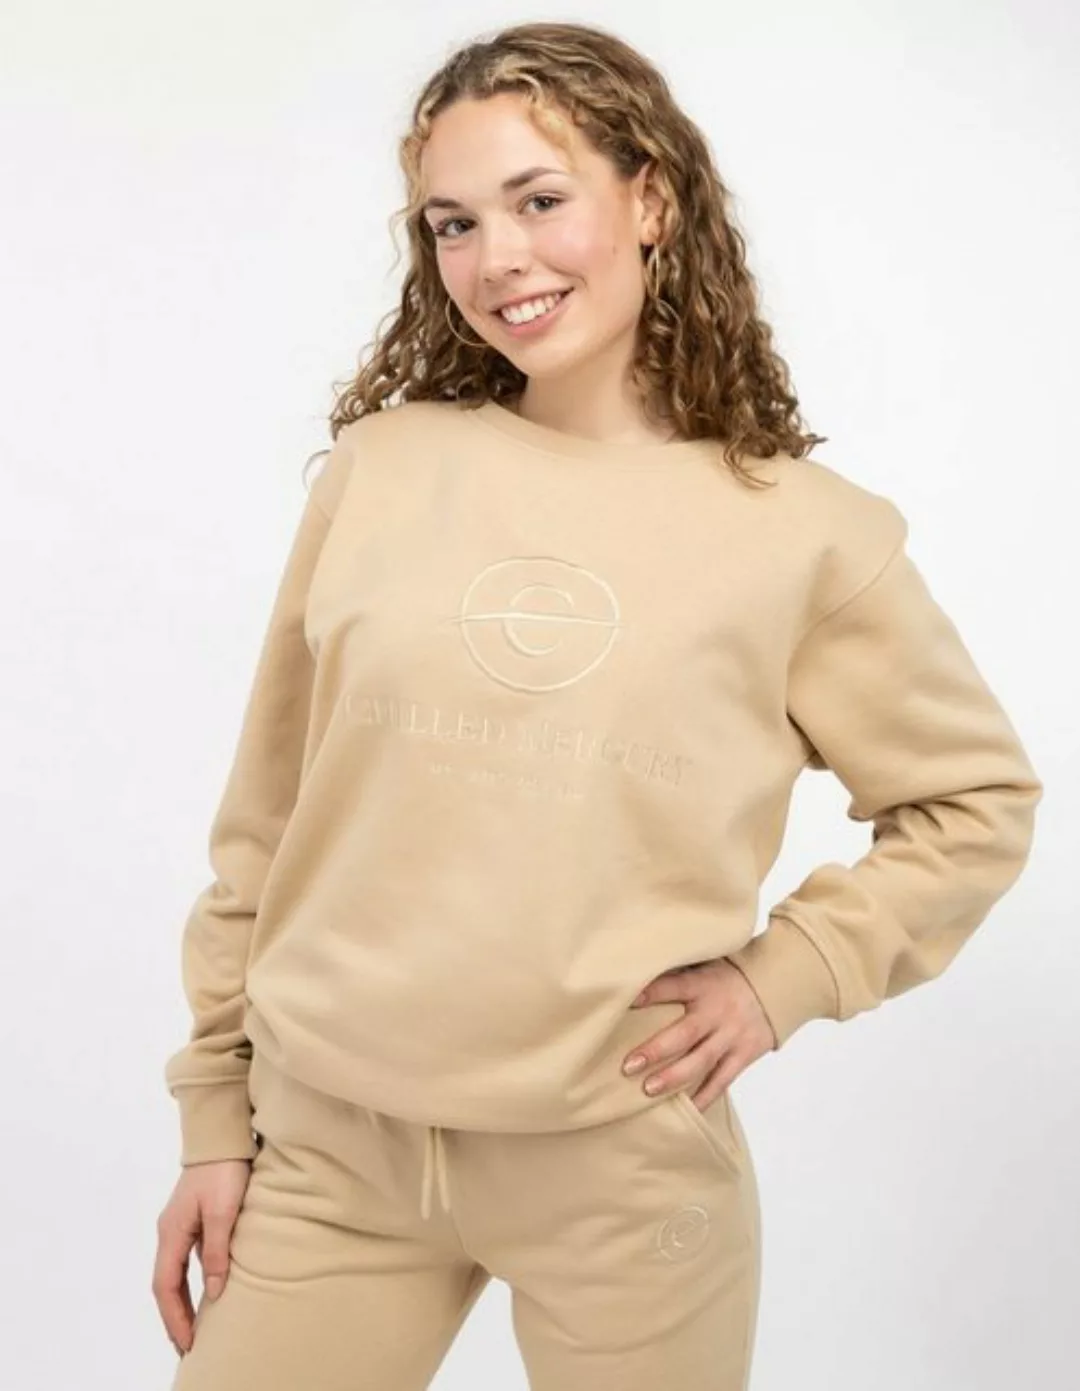 Chilled Mercury Sweatshirt Pullover / Damen günstig online kaufen